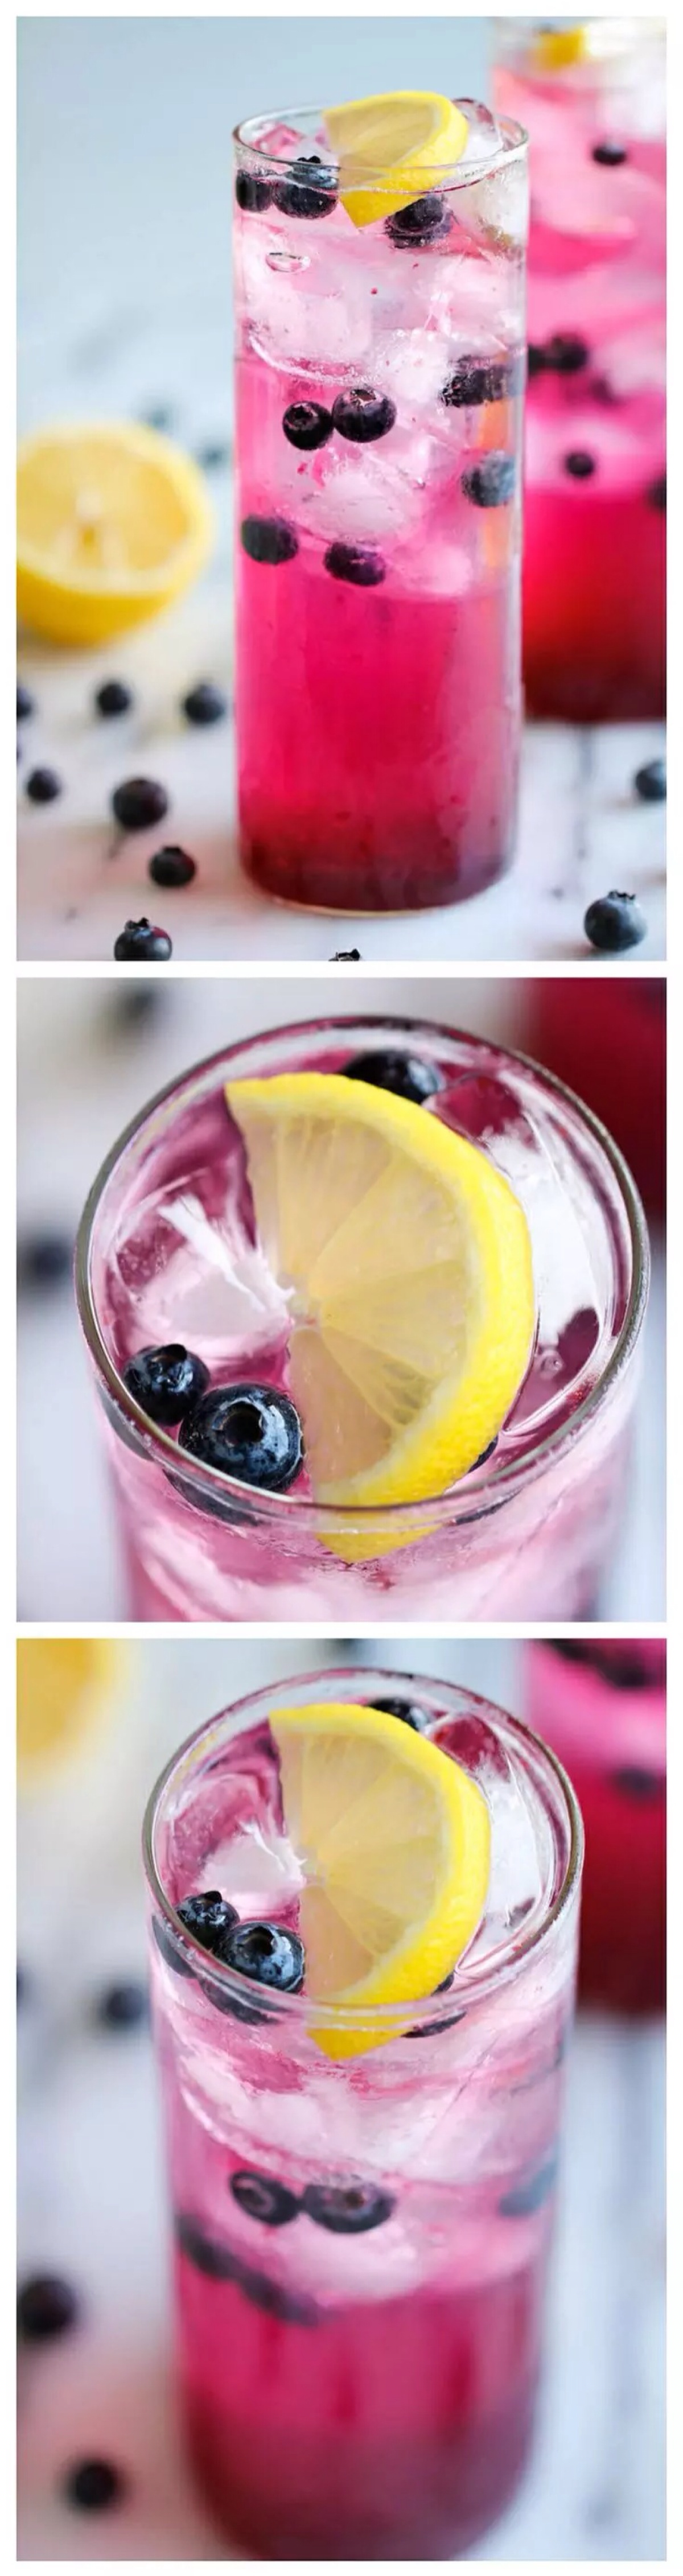 蓝莓汁 库存图片. 图片 包括有 成份, 饮料, 杯子, 特写镜头, 可口, 果子, 关闭, 饮食, 玻璃 - 42137901